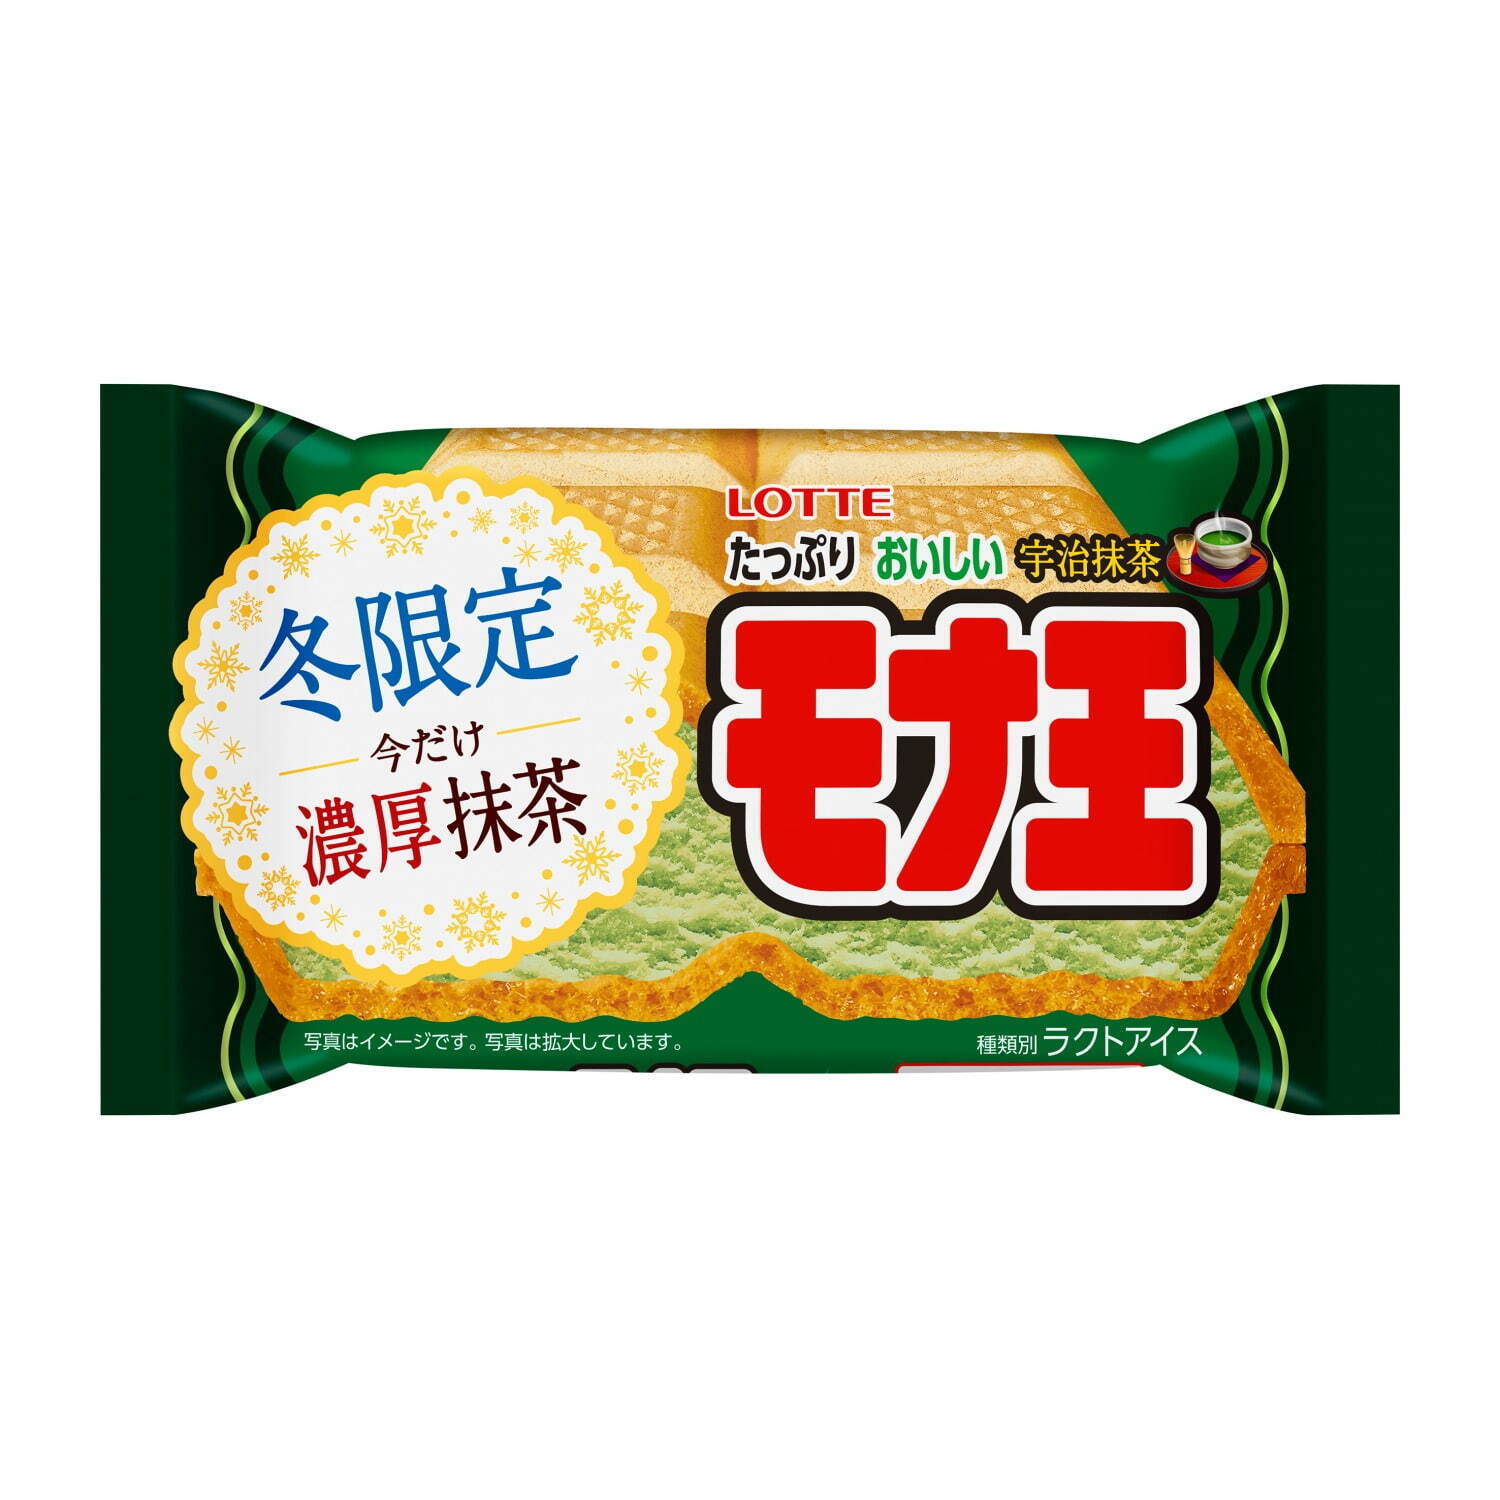 「モナ王 宇治抹茶」151円